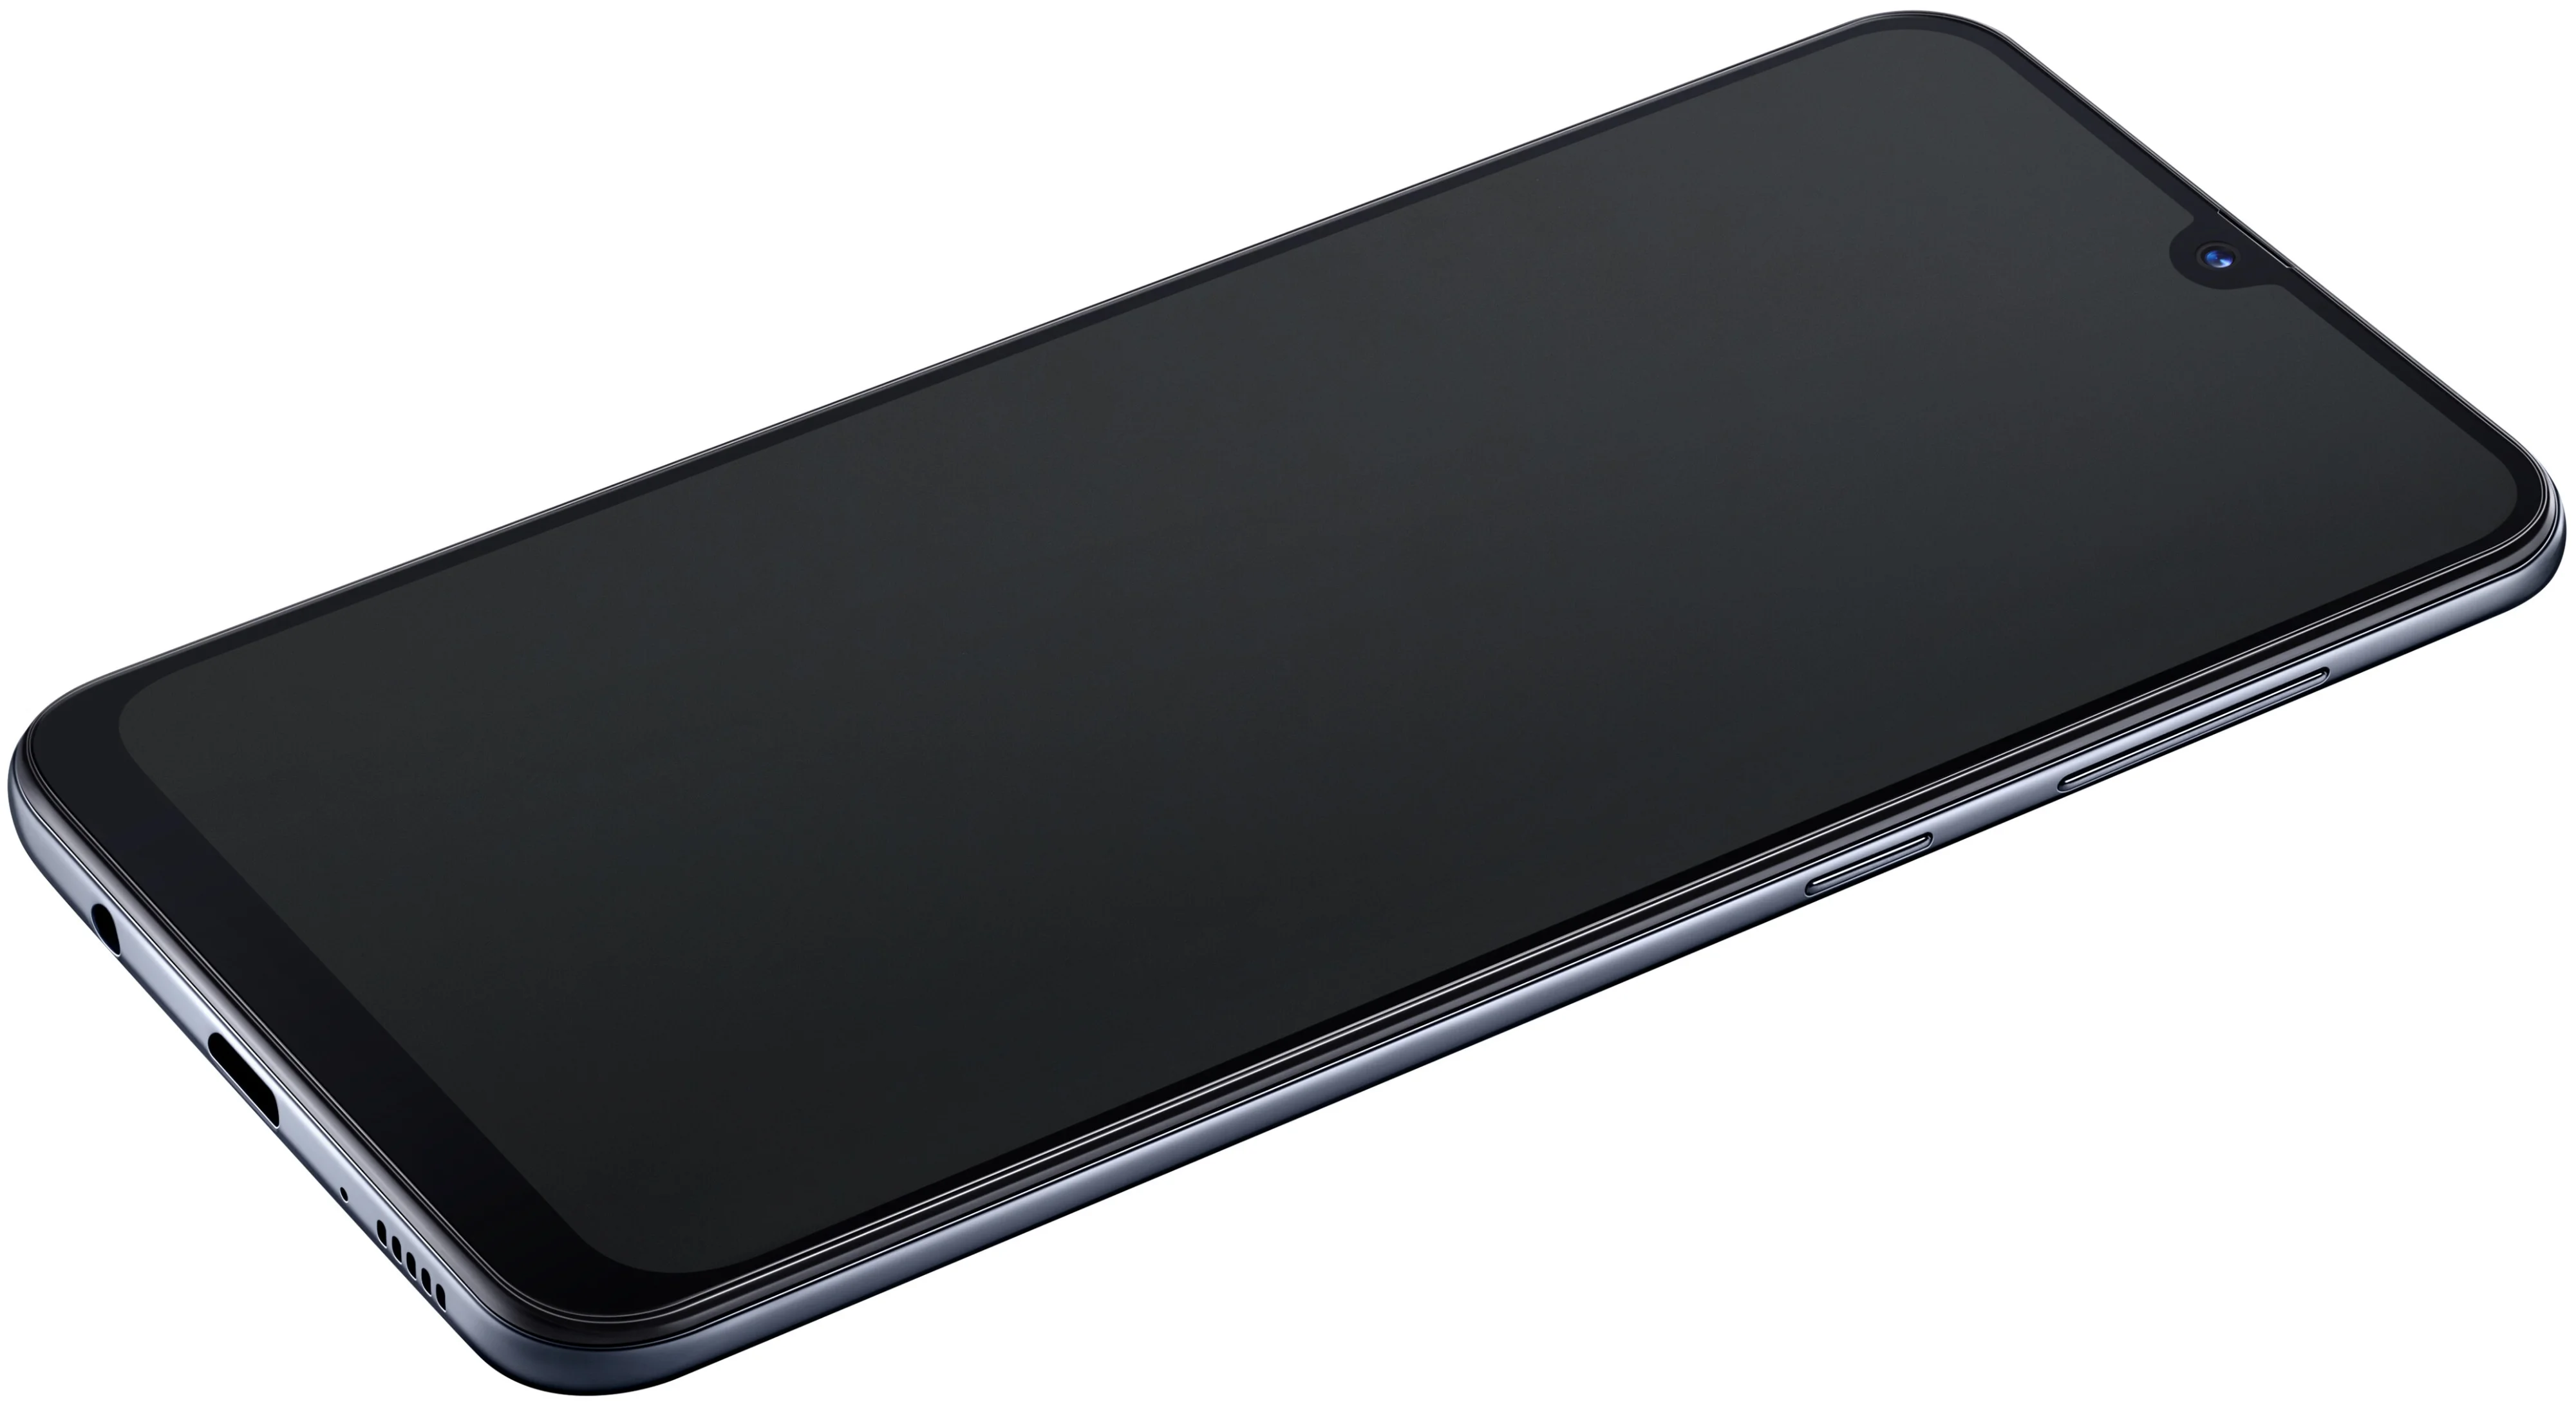 Samsung Galaxy A30 32GB - операционная система: Android 9.0